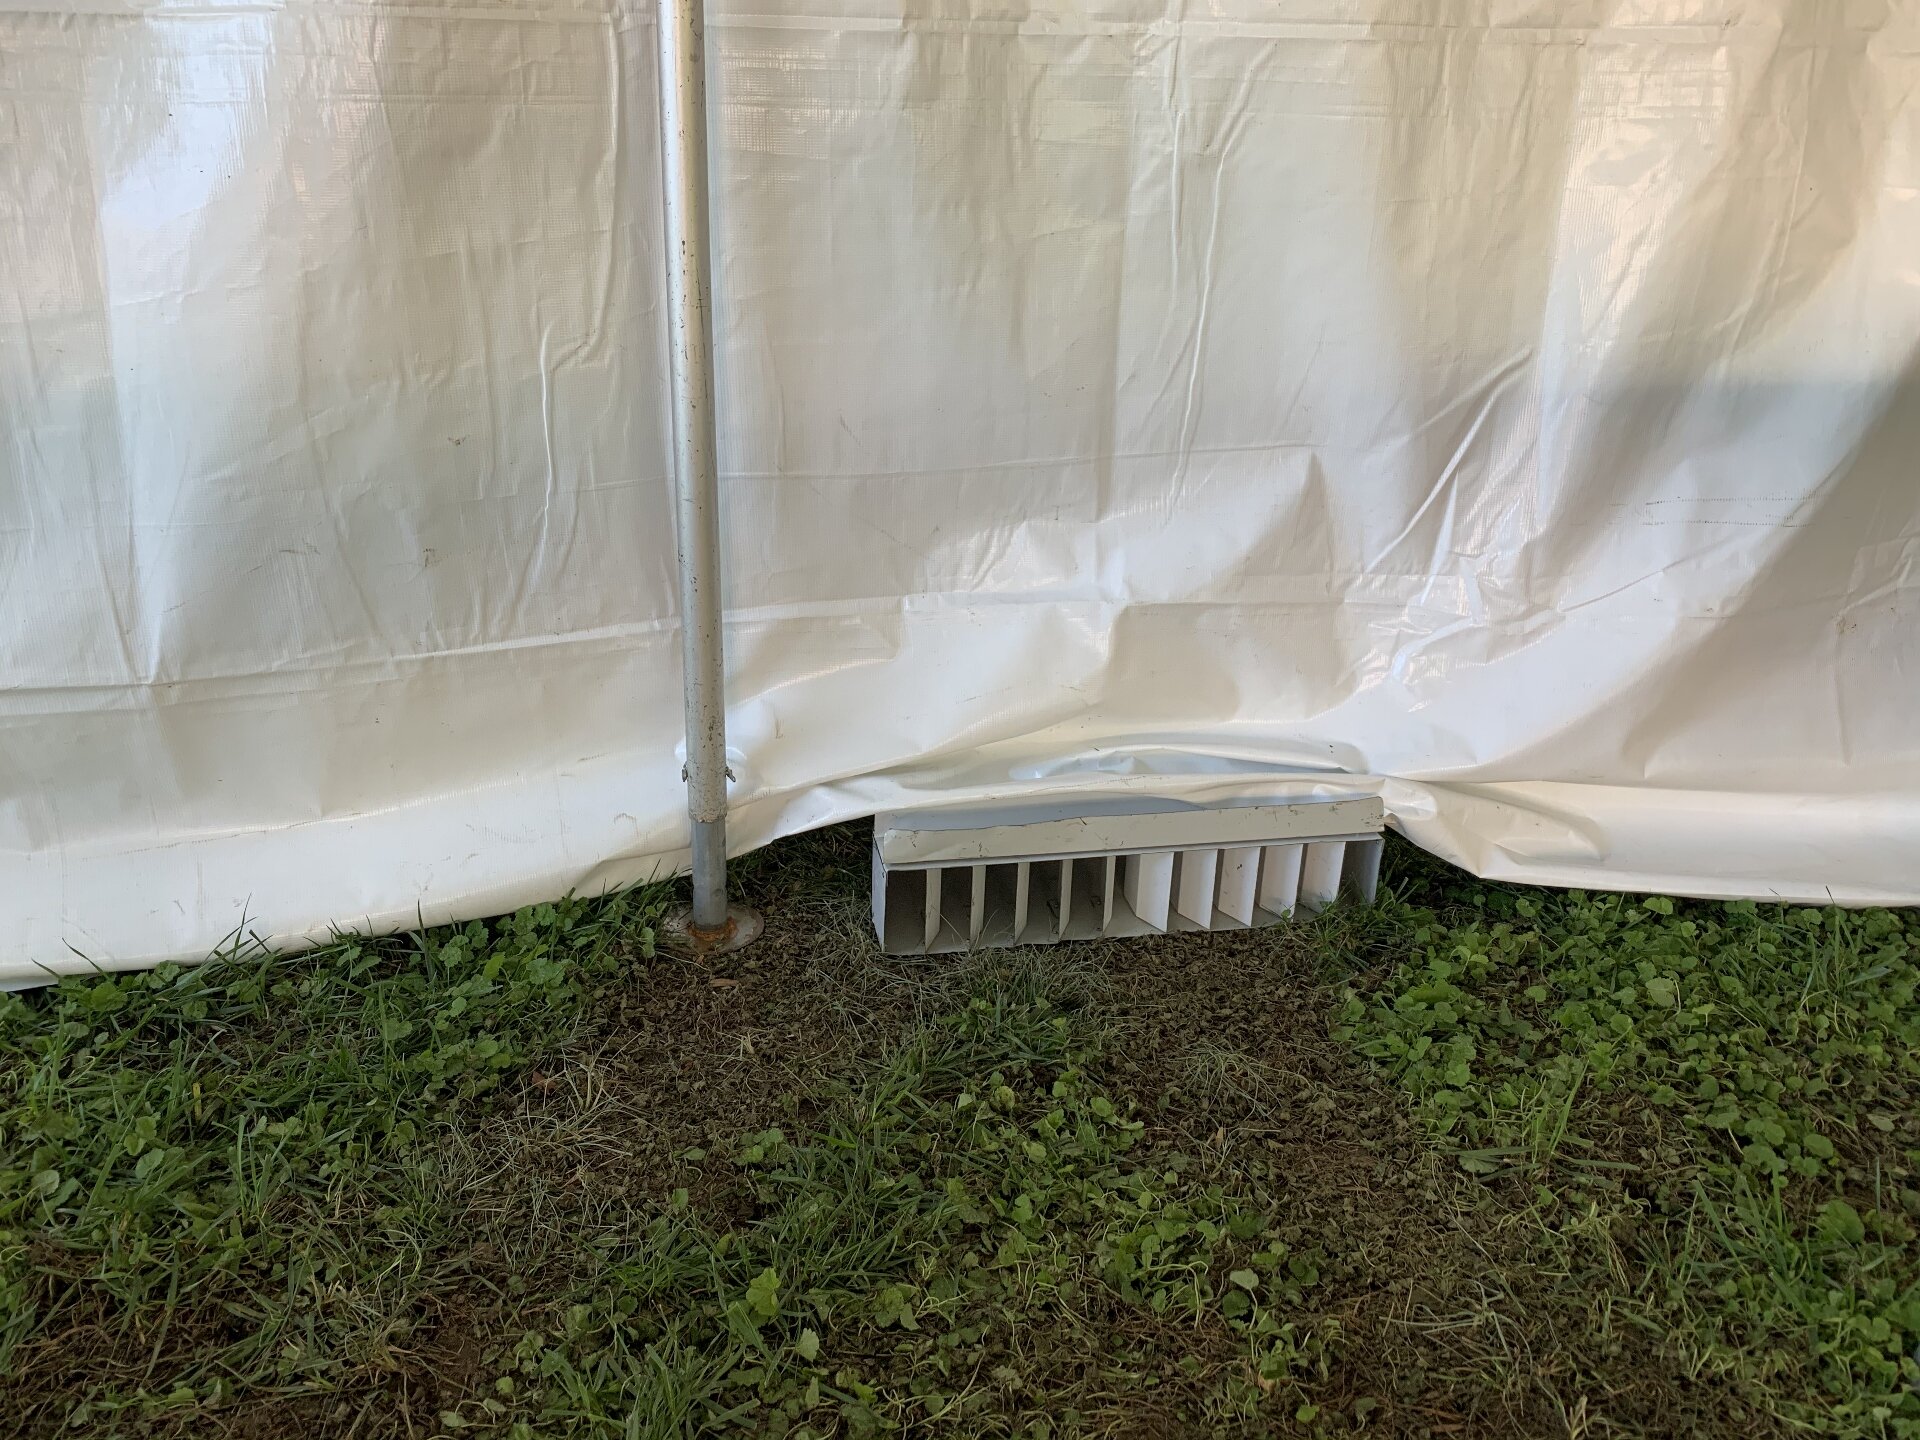 Tent heater diffuser (vent)